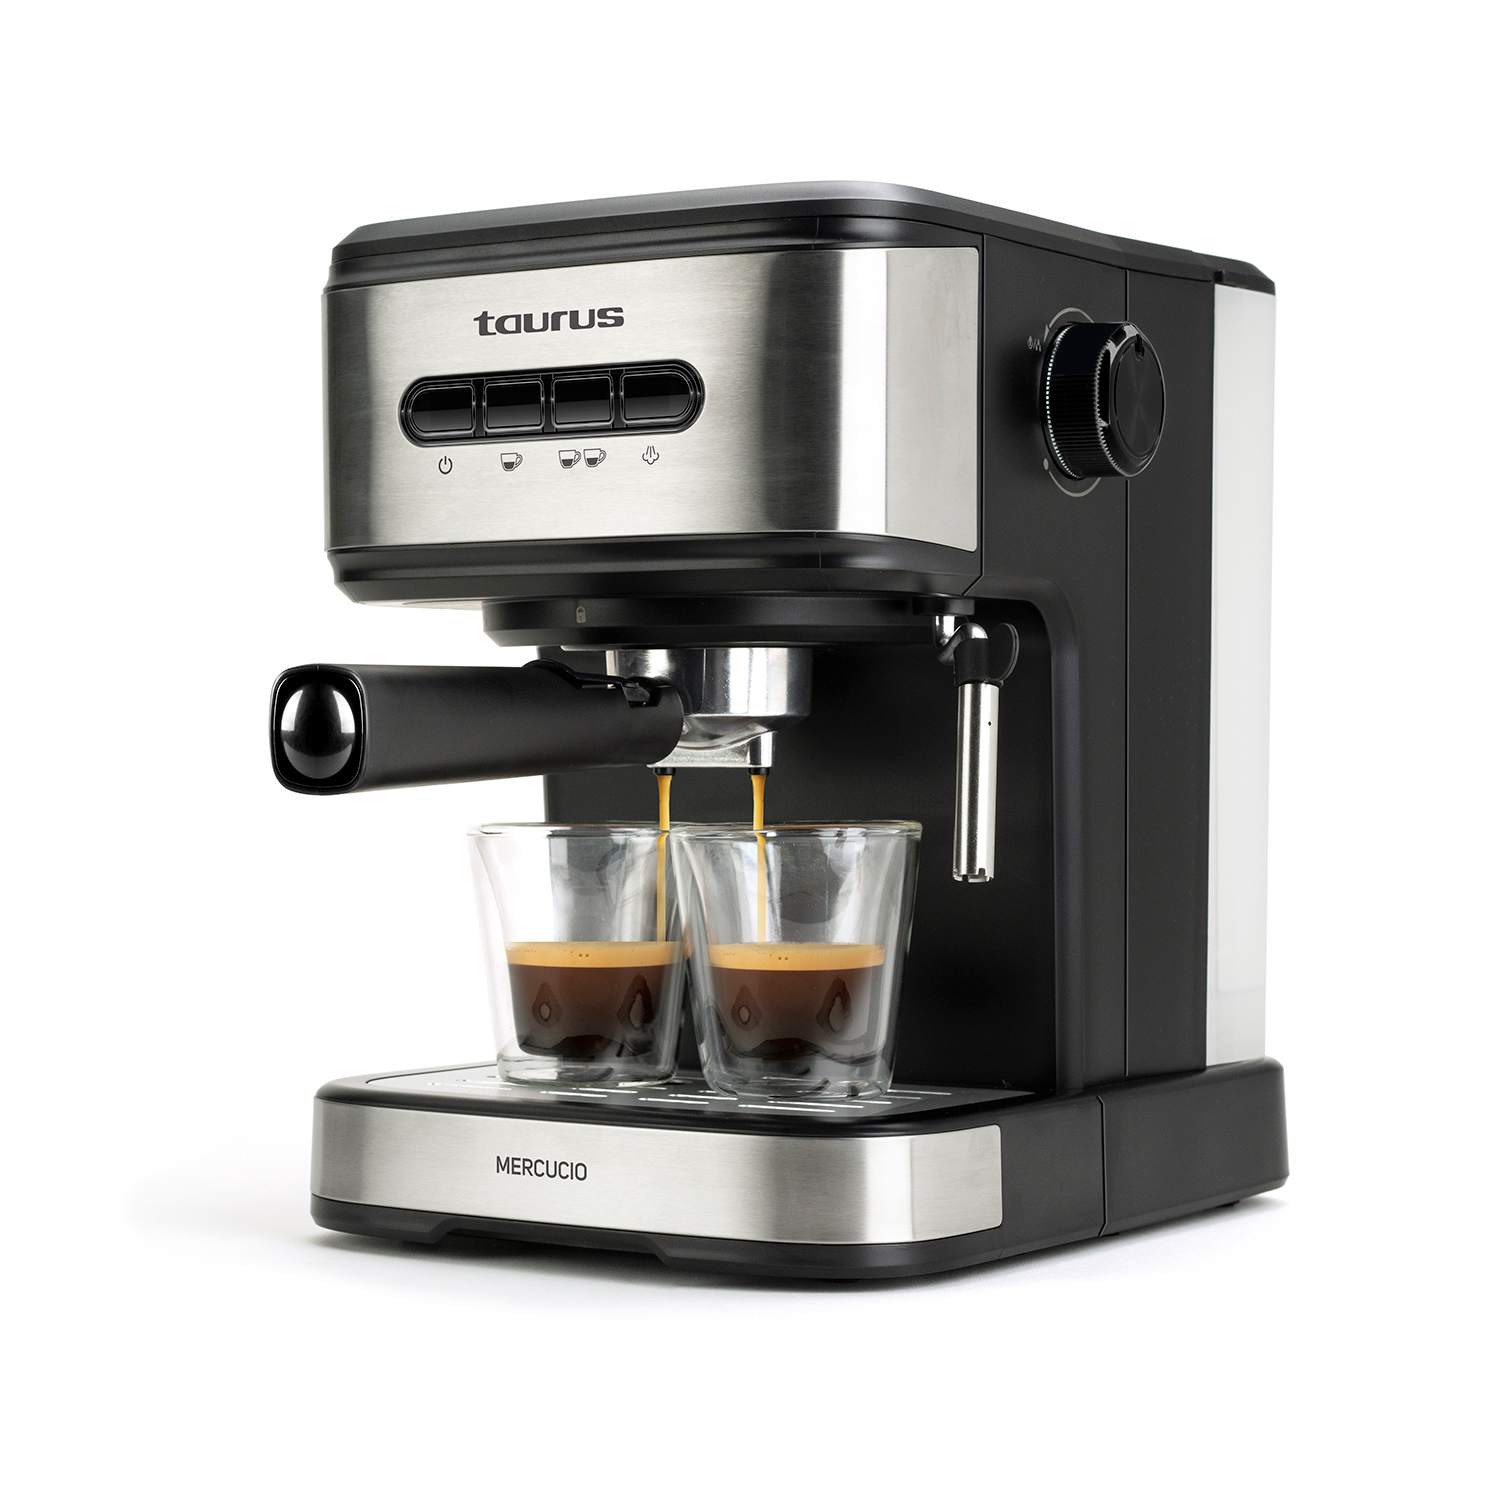 Minimoka - Cafetera espresso, 2 cacillos para 1 o 2 cafés, 15 bar, 850W, Vaporizador, 1.6L, Café molido o monodosis, Bandeja calienta tazas, Filtro Extra Cream